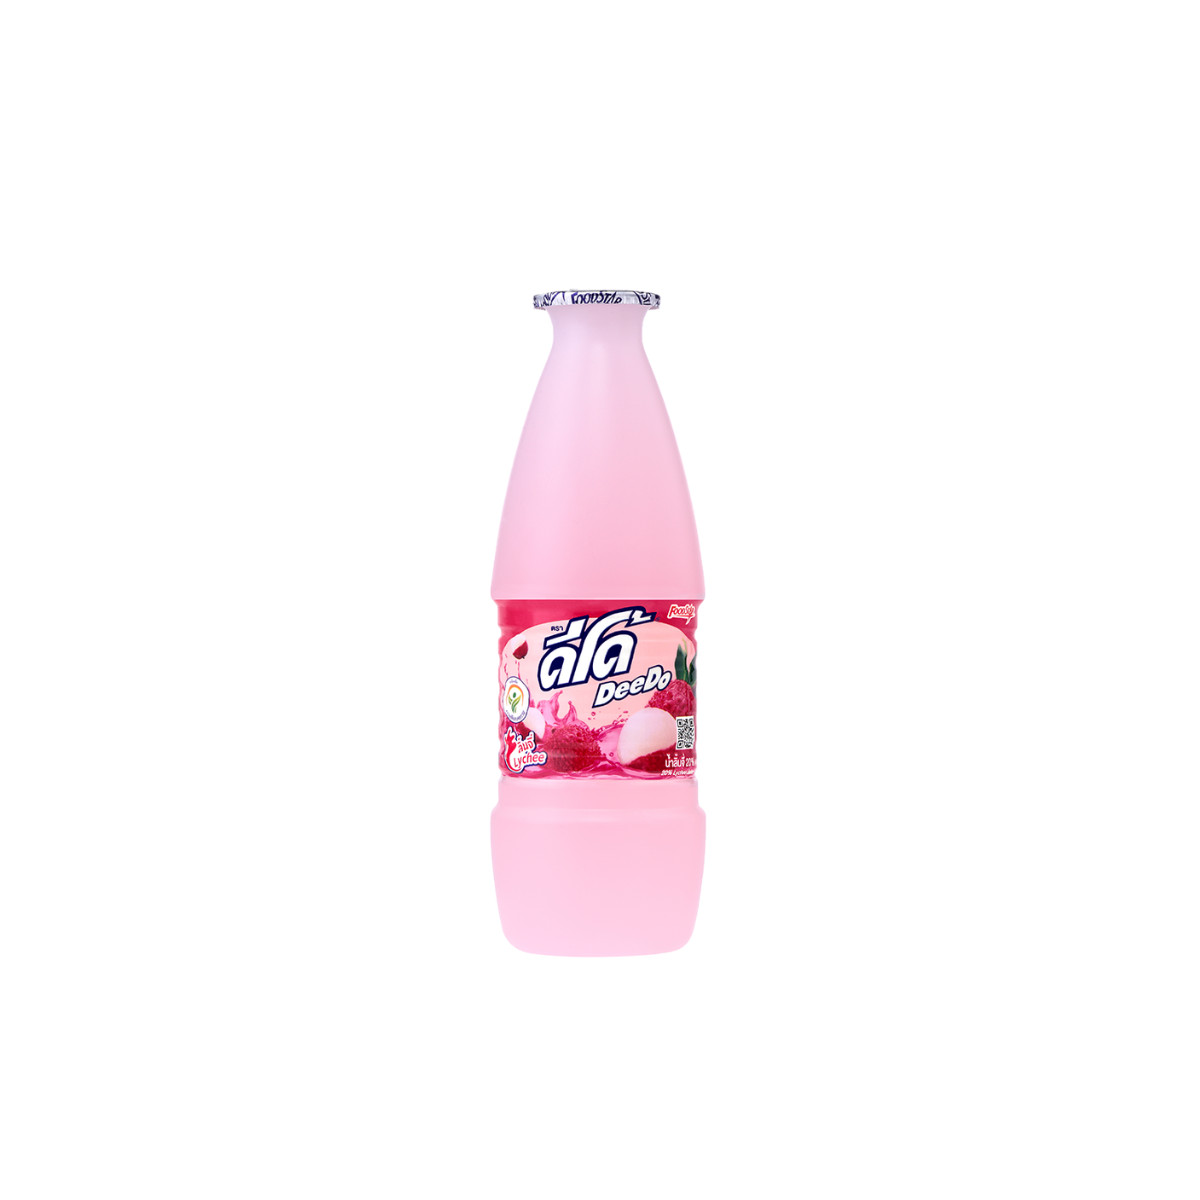 Deedo Lychee Juice - 300 ml